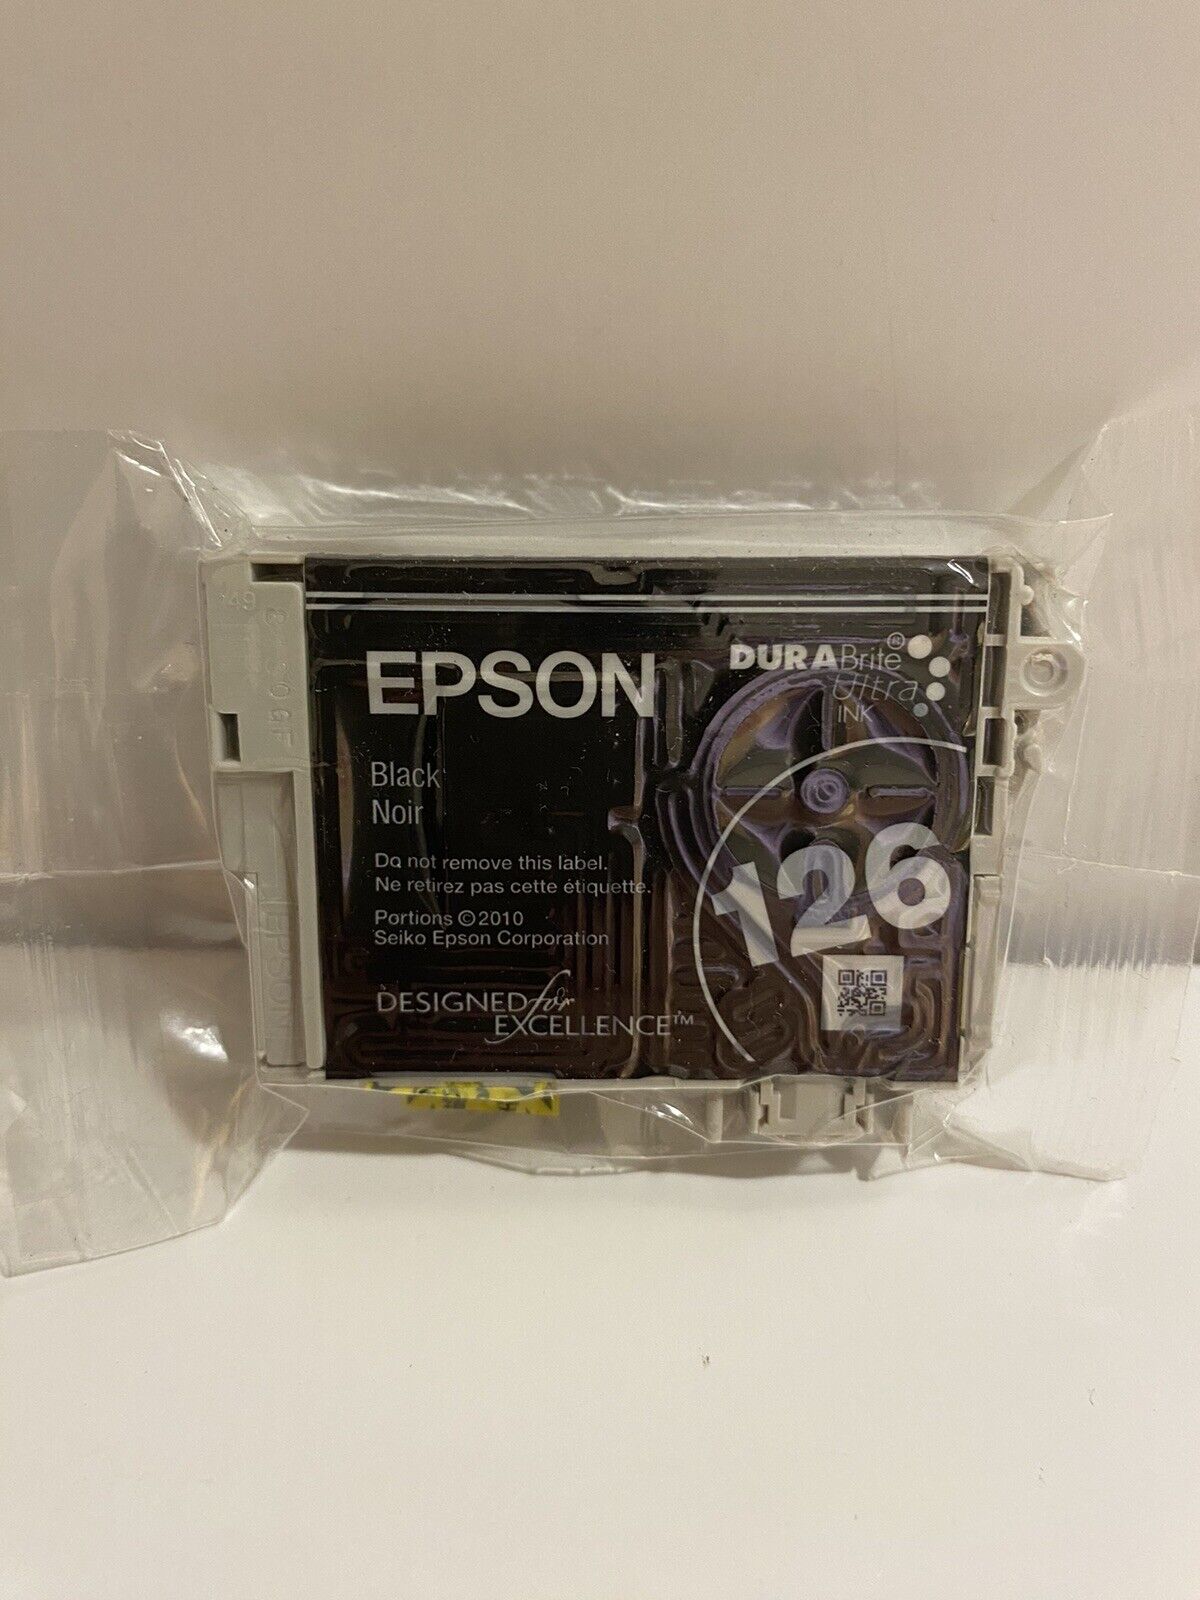 Epson Dura Brite Ultra Ink 126 Black